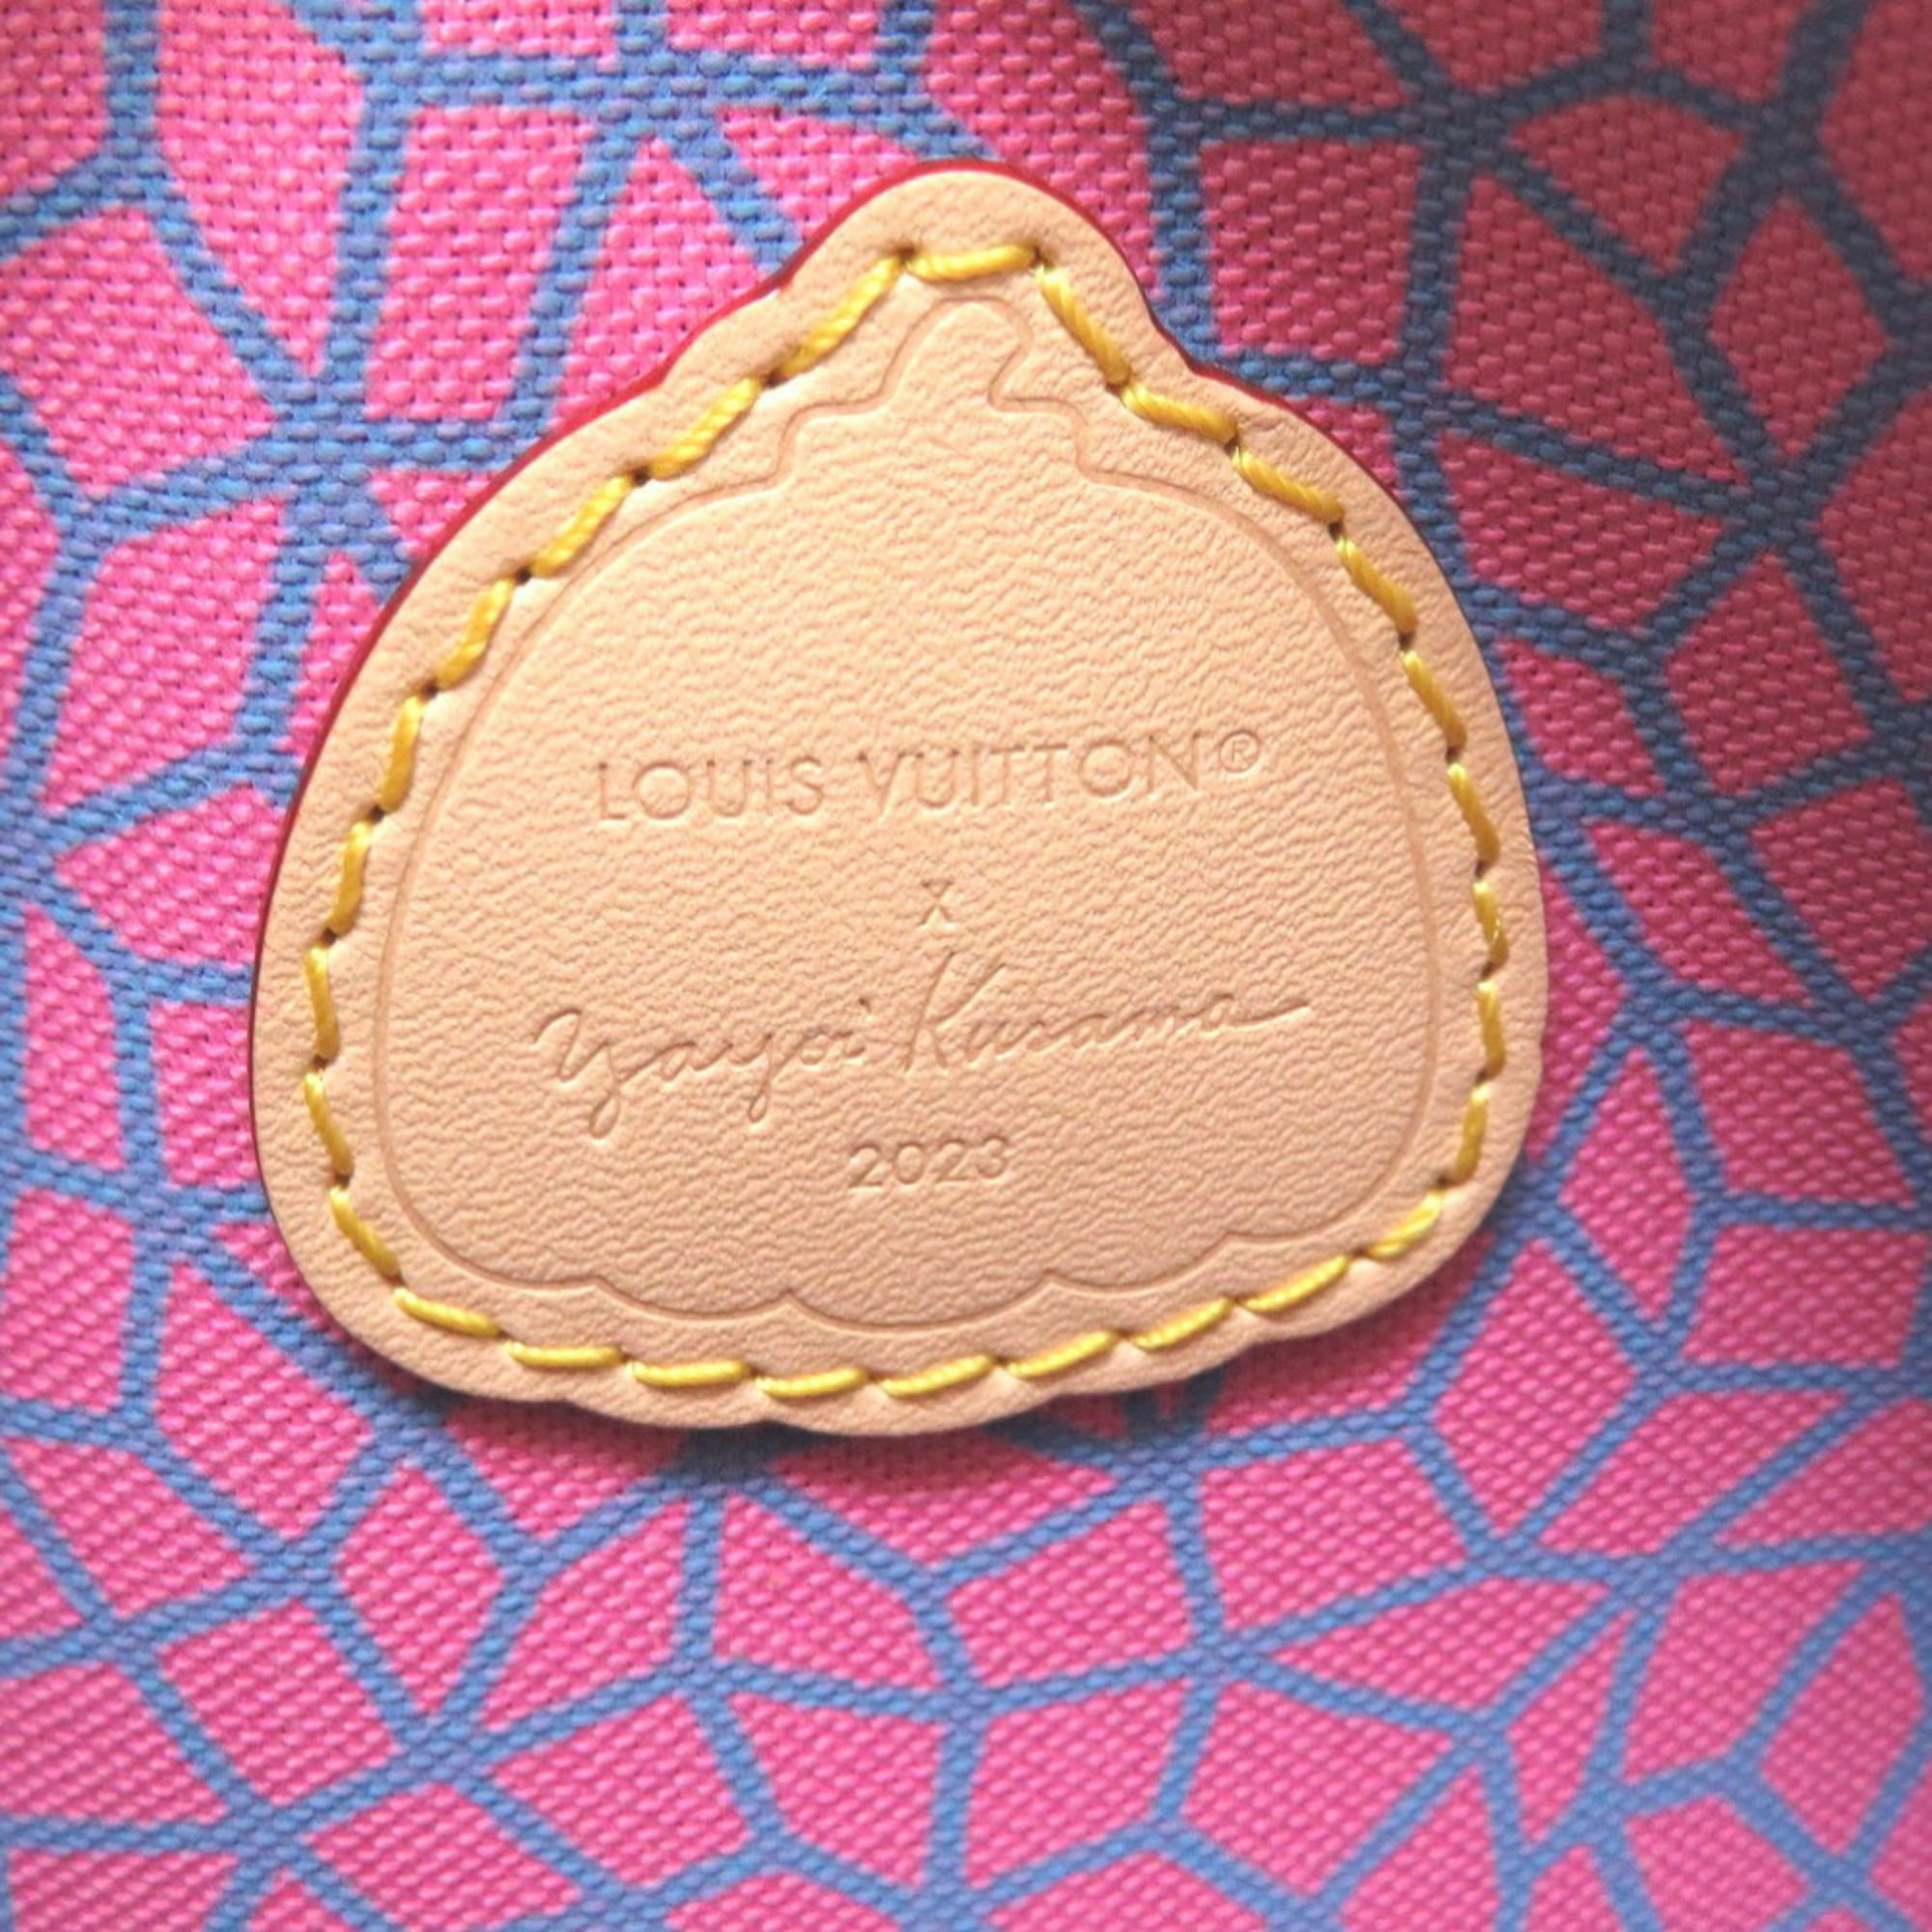 Louis Vuitton x YK Monogram Canvas Pumpkin Speedy Bandouliere 20